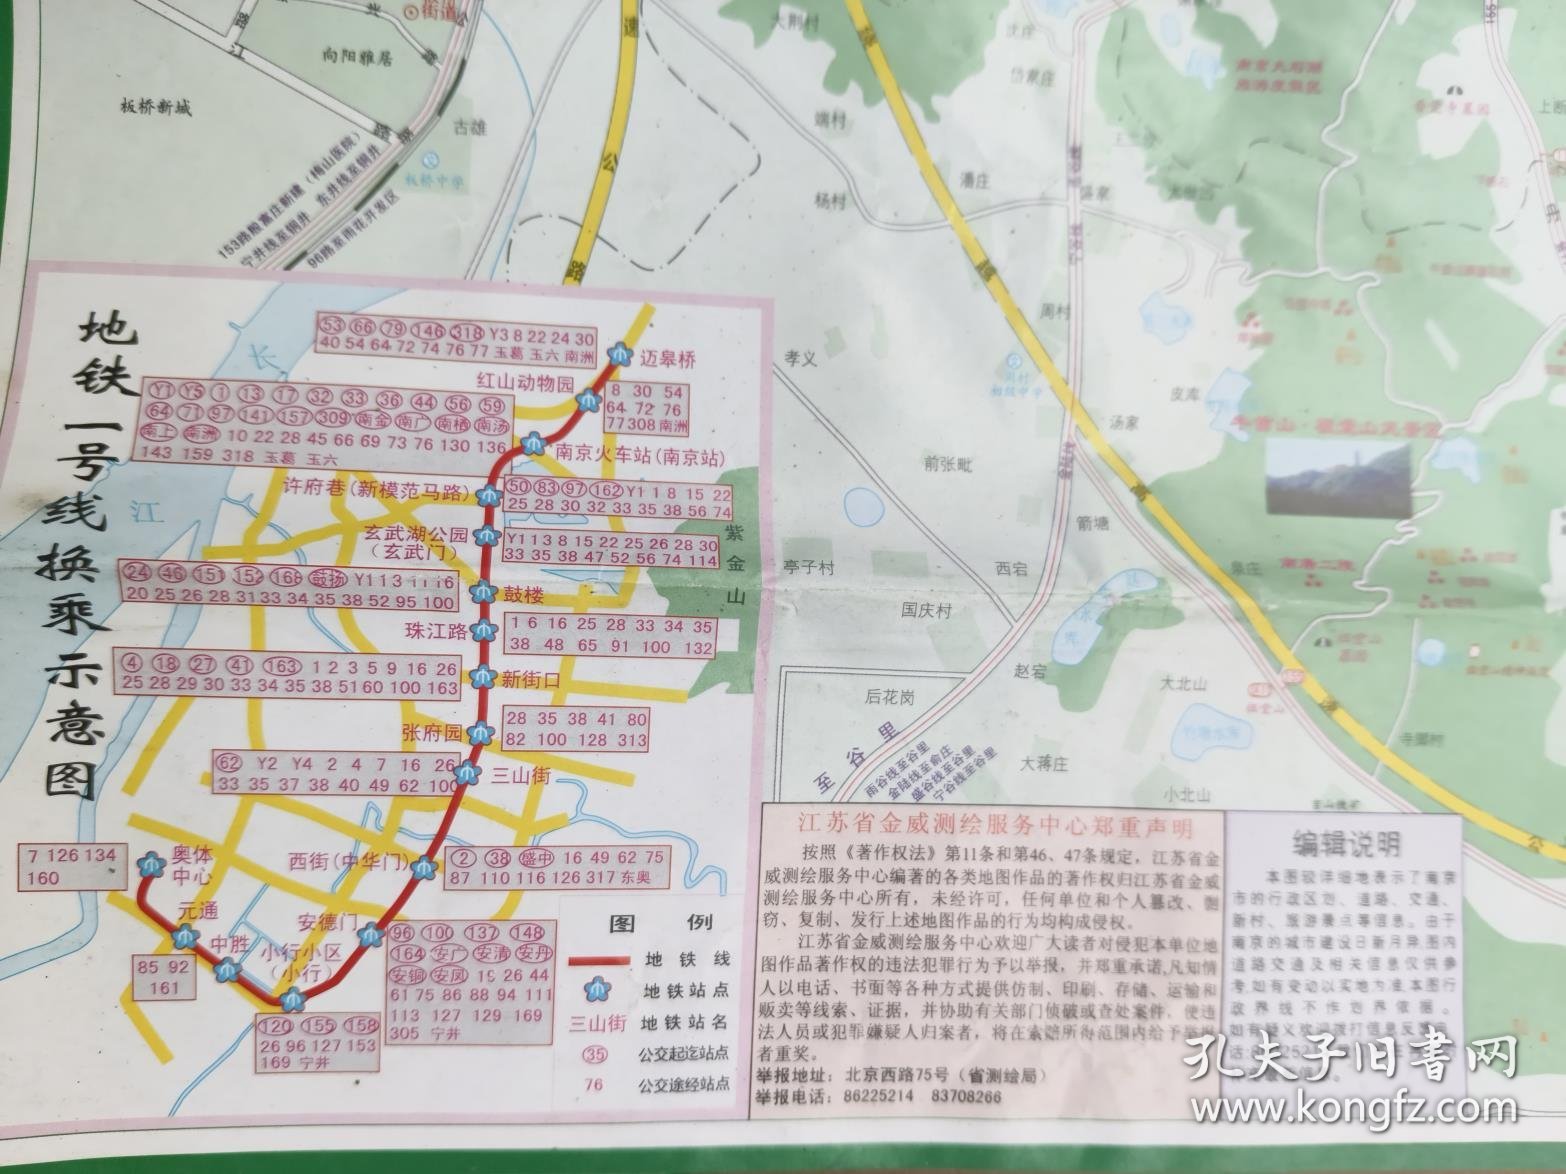 南京主城区交通旅游图   2009版